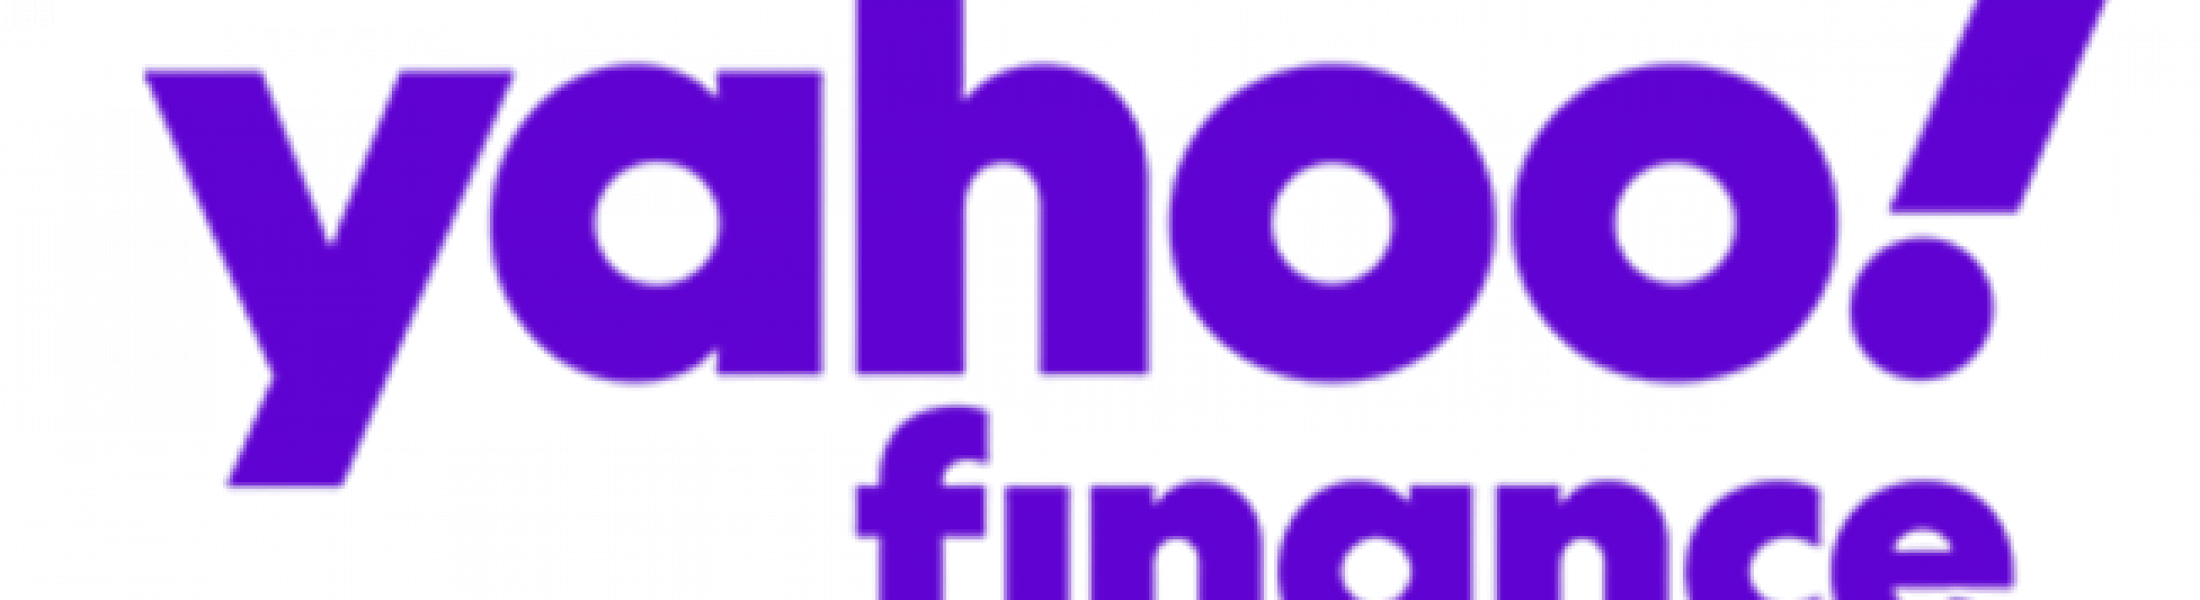 yahoo finance news today